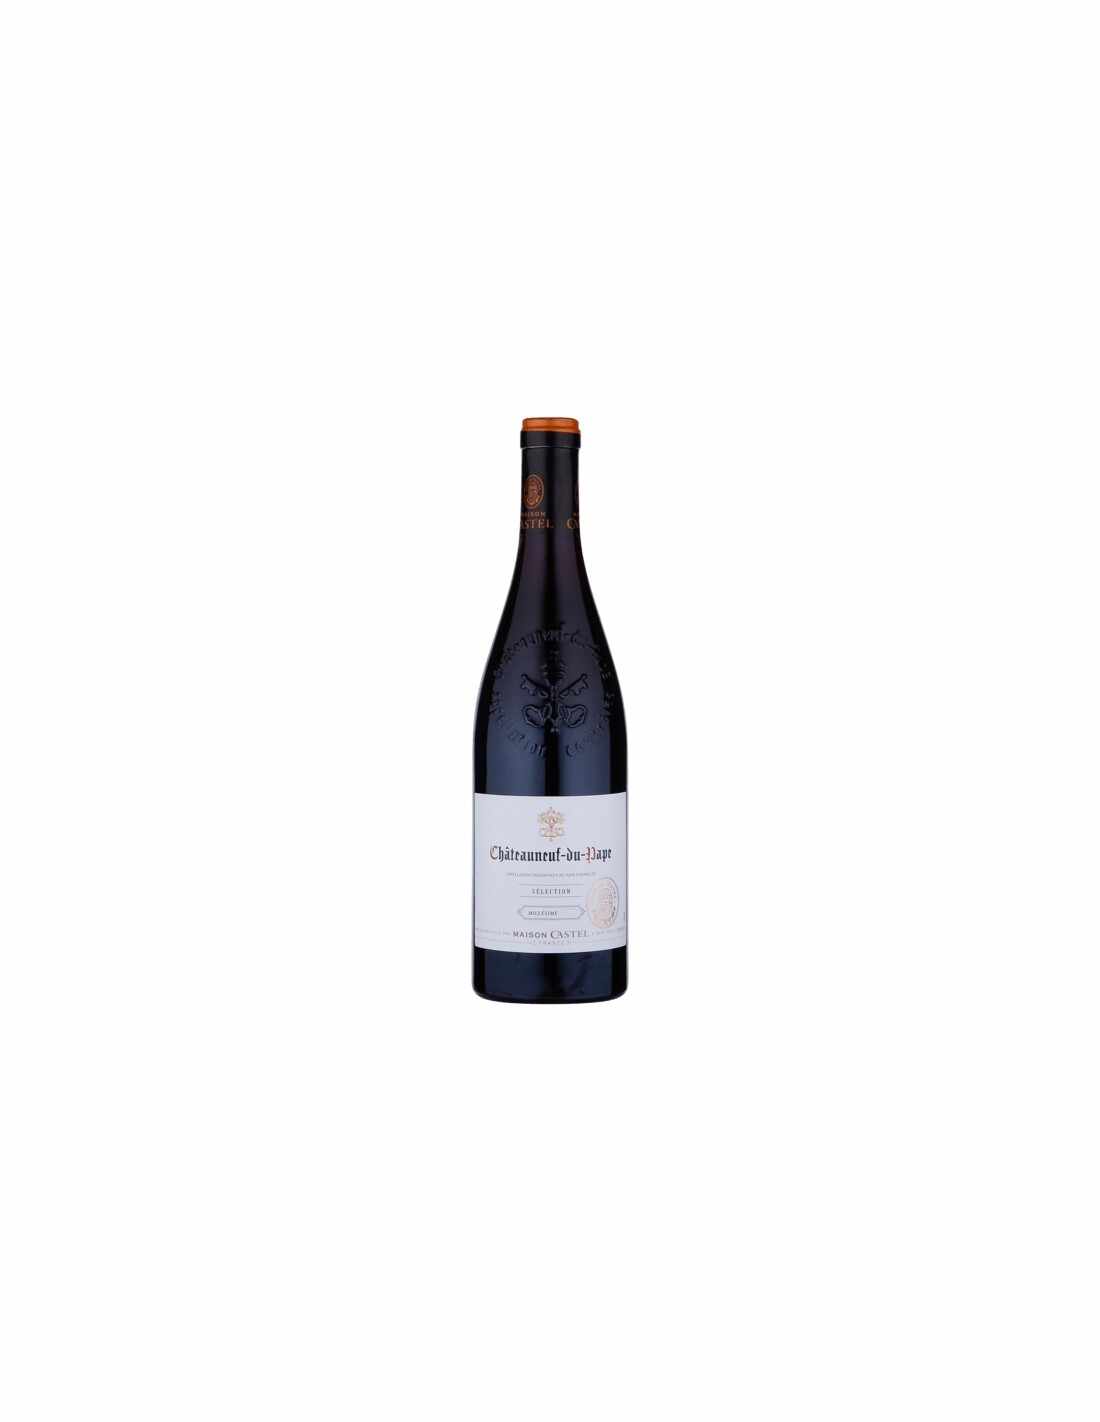 Vin rosu sec, Cupaj, Maison Selection Castel Chateauneuf-du-Pape, 14.5% alc., 0.75L, Franta